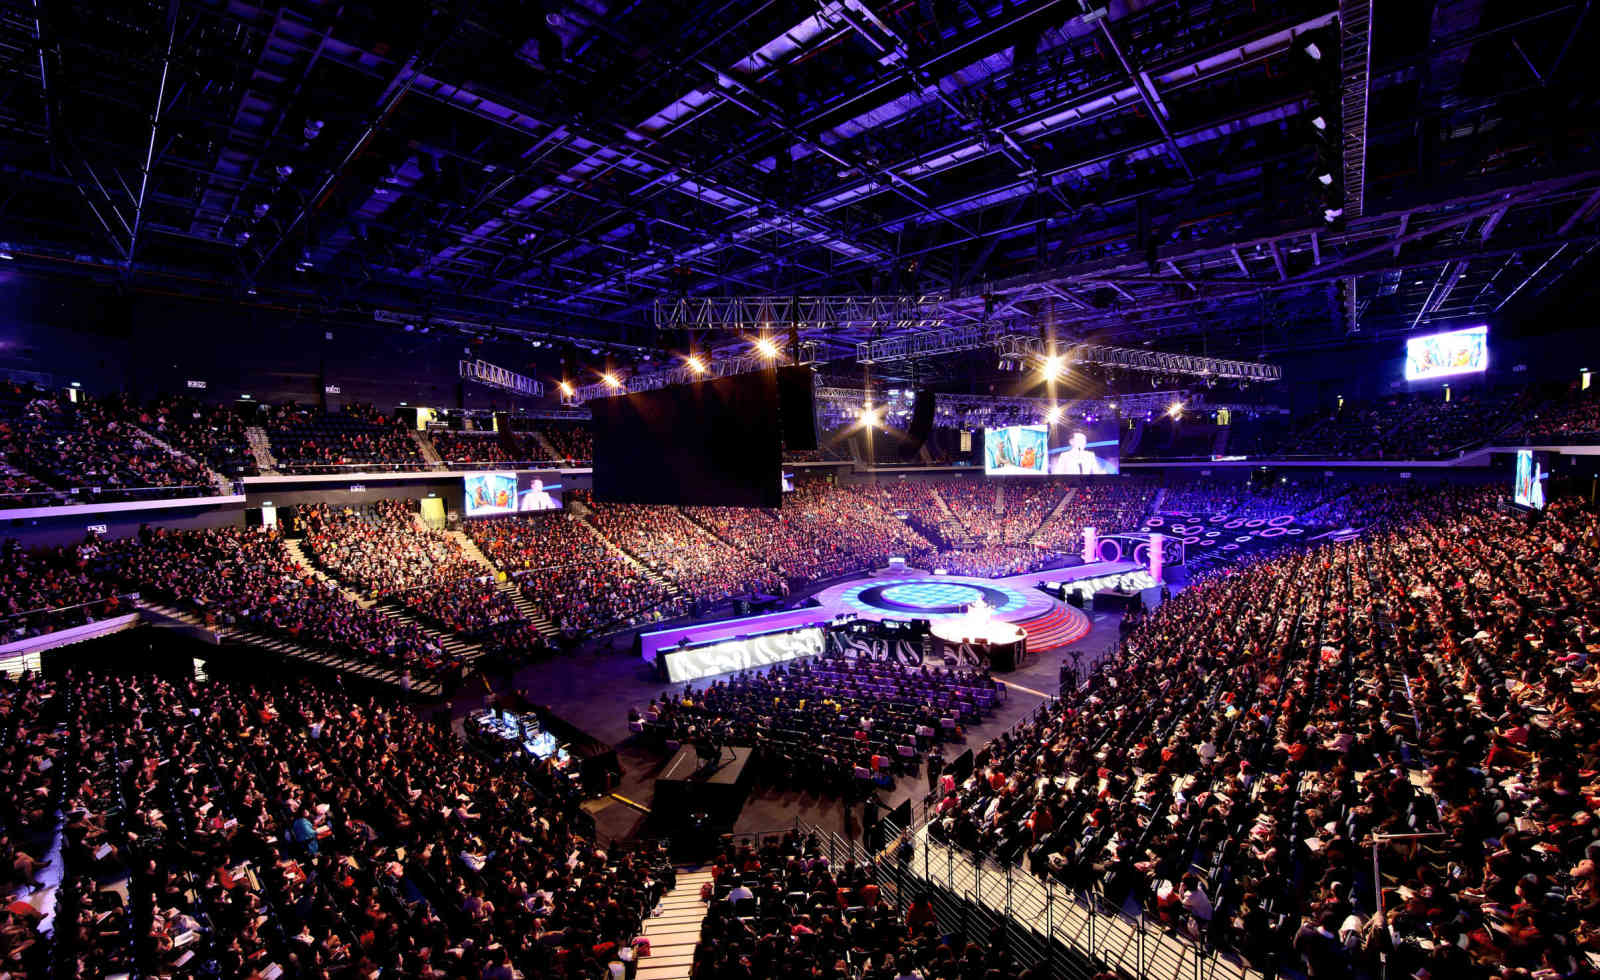                                                      15000席のCotai Arena                                                 